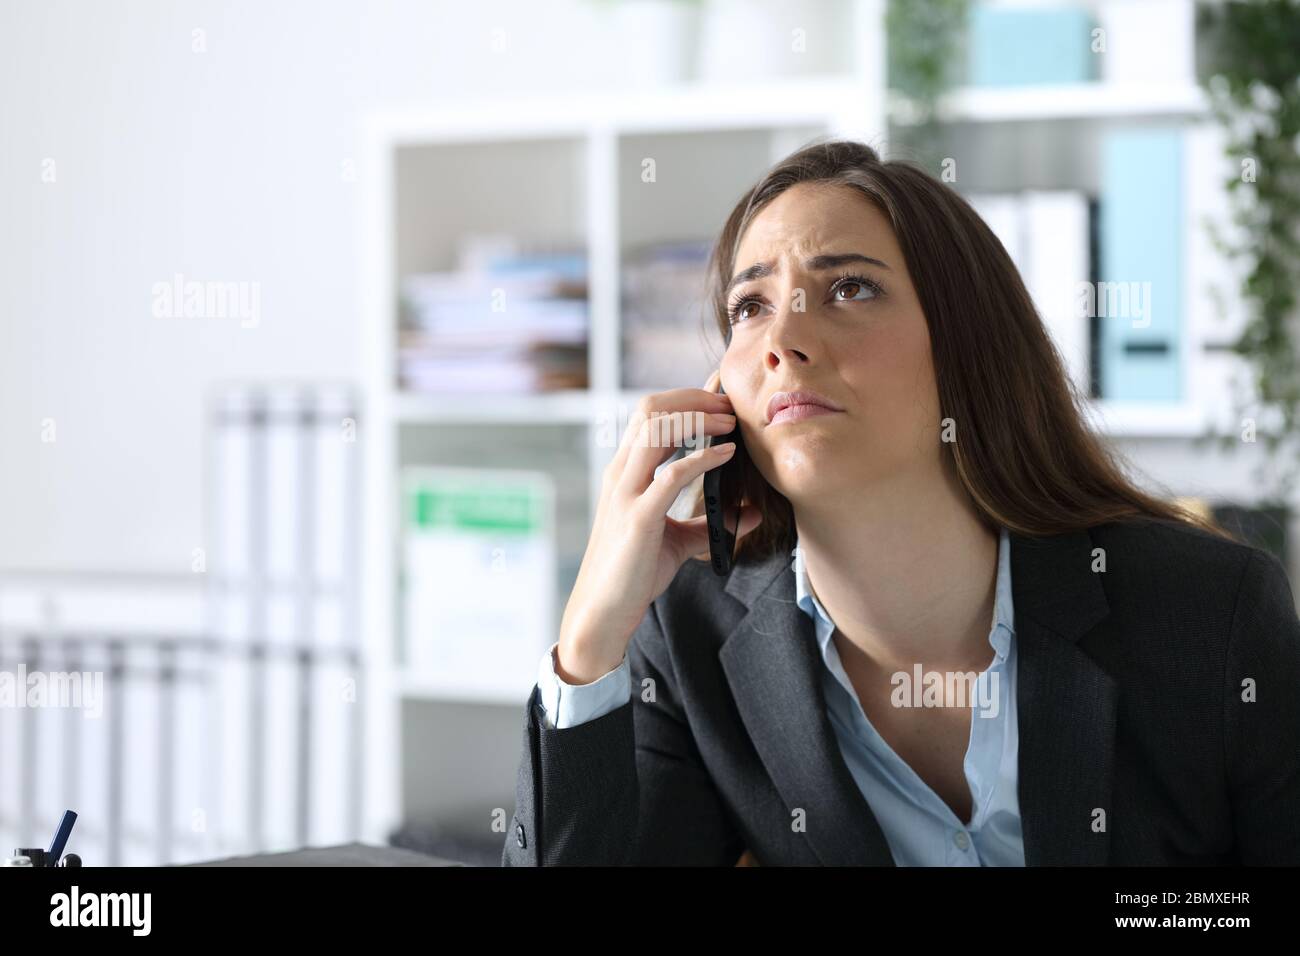 Femme dirigeante impatiente appelant sur un smartphone, regardant le bureau Banque D'Images